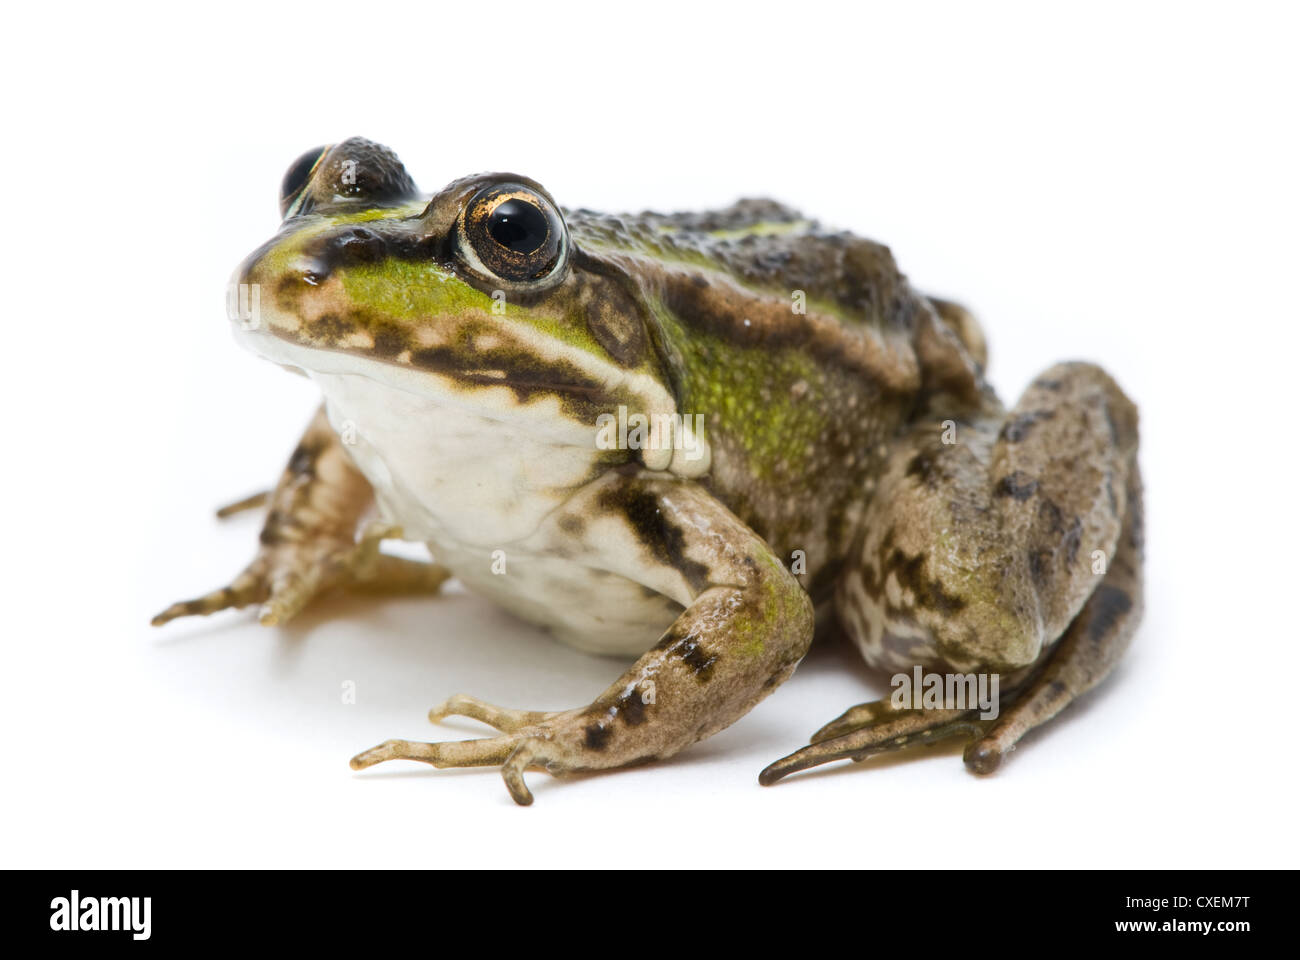 Rana ridibunda. Frog on white background Stock Photo